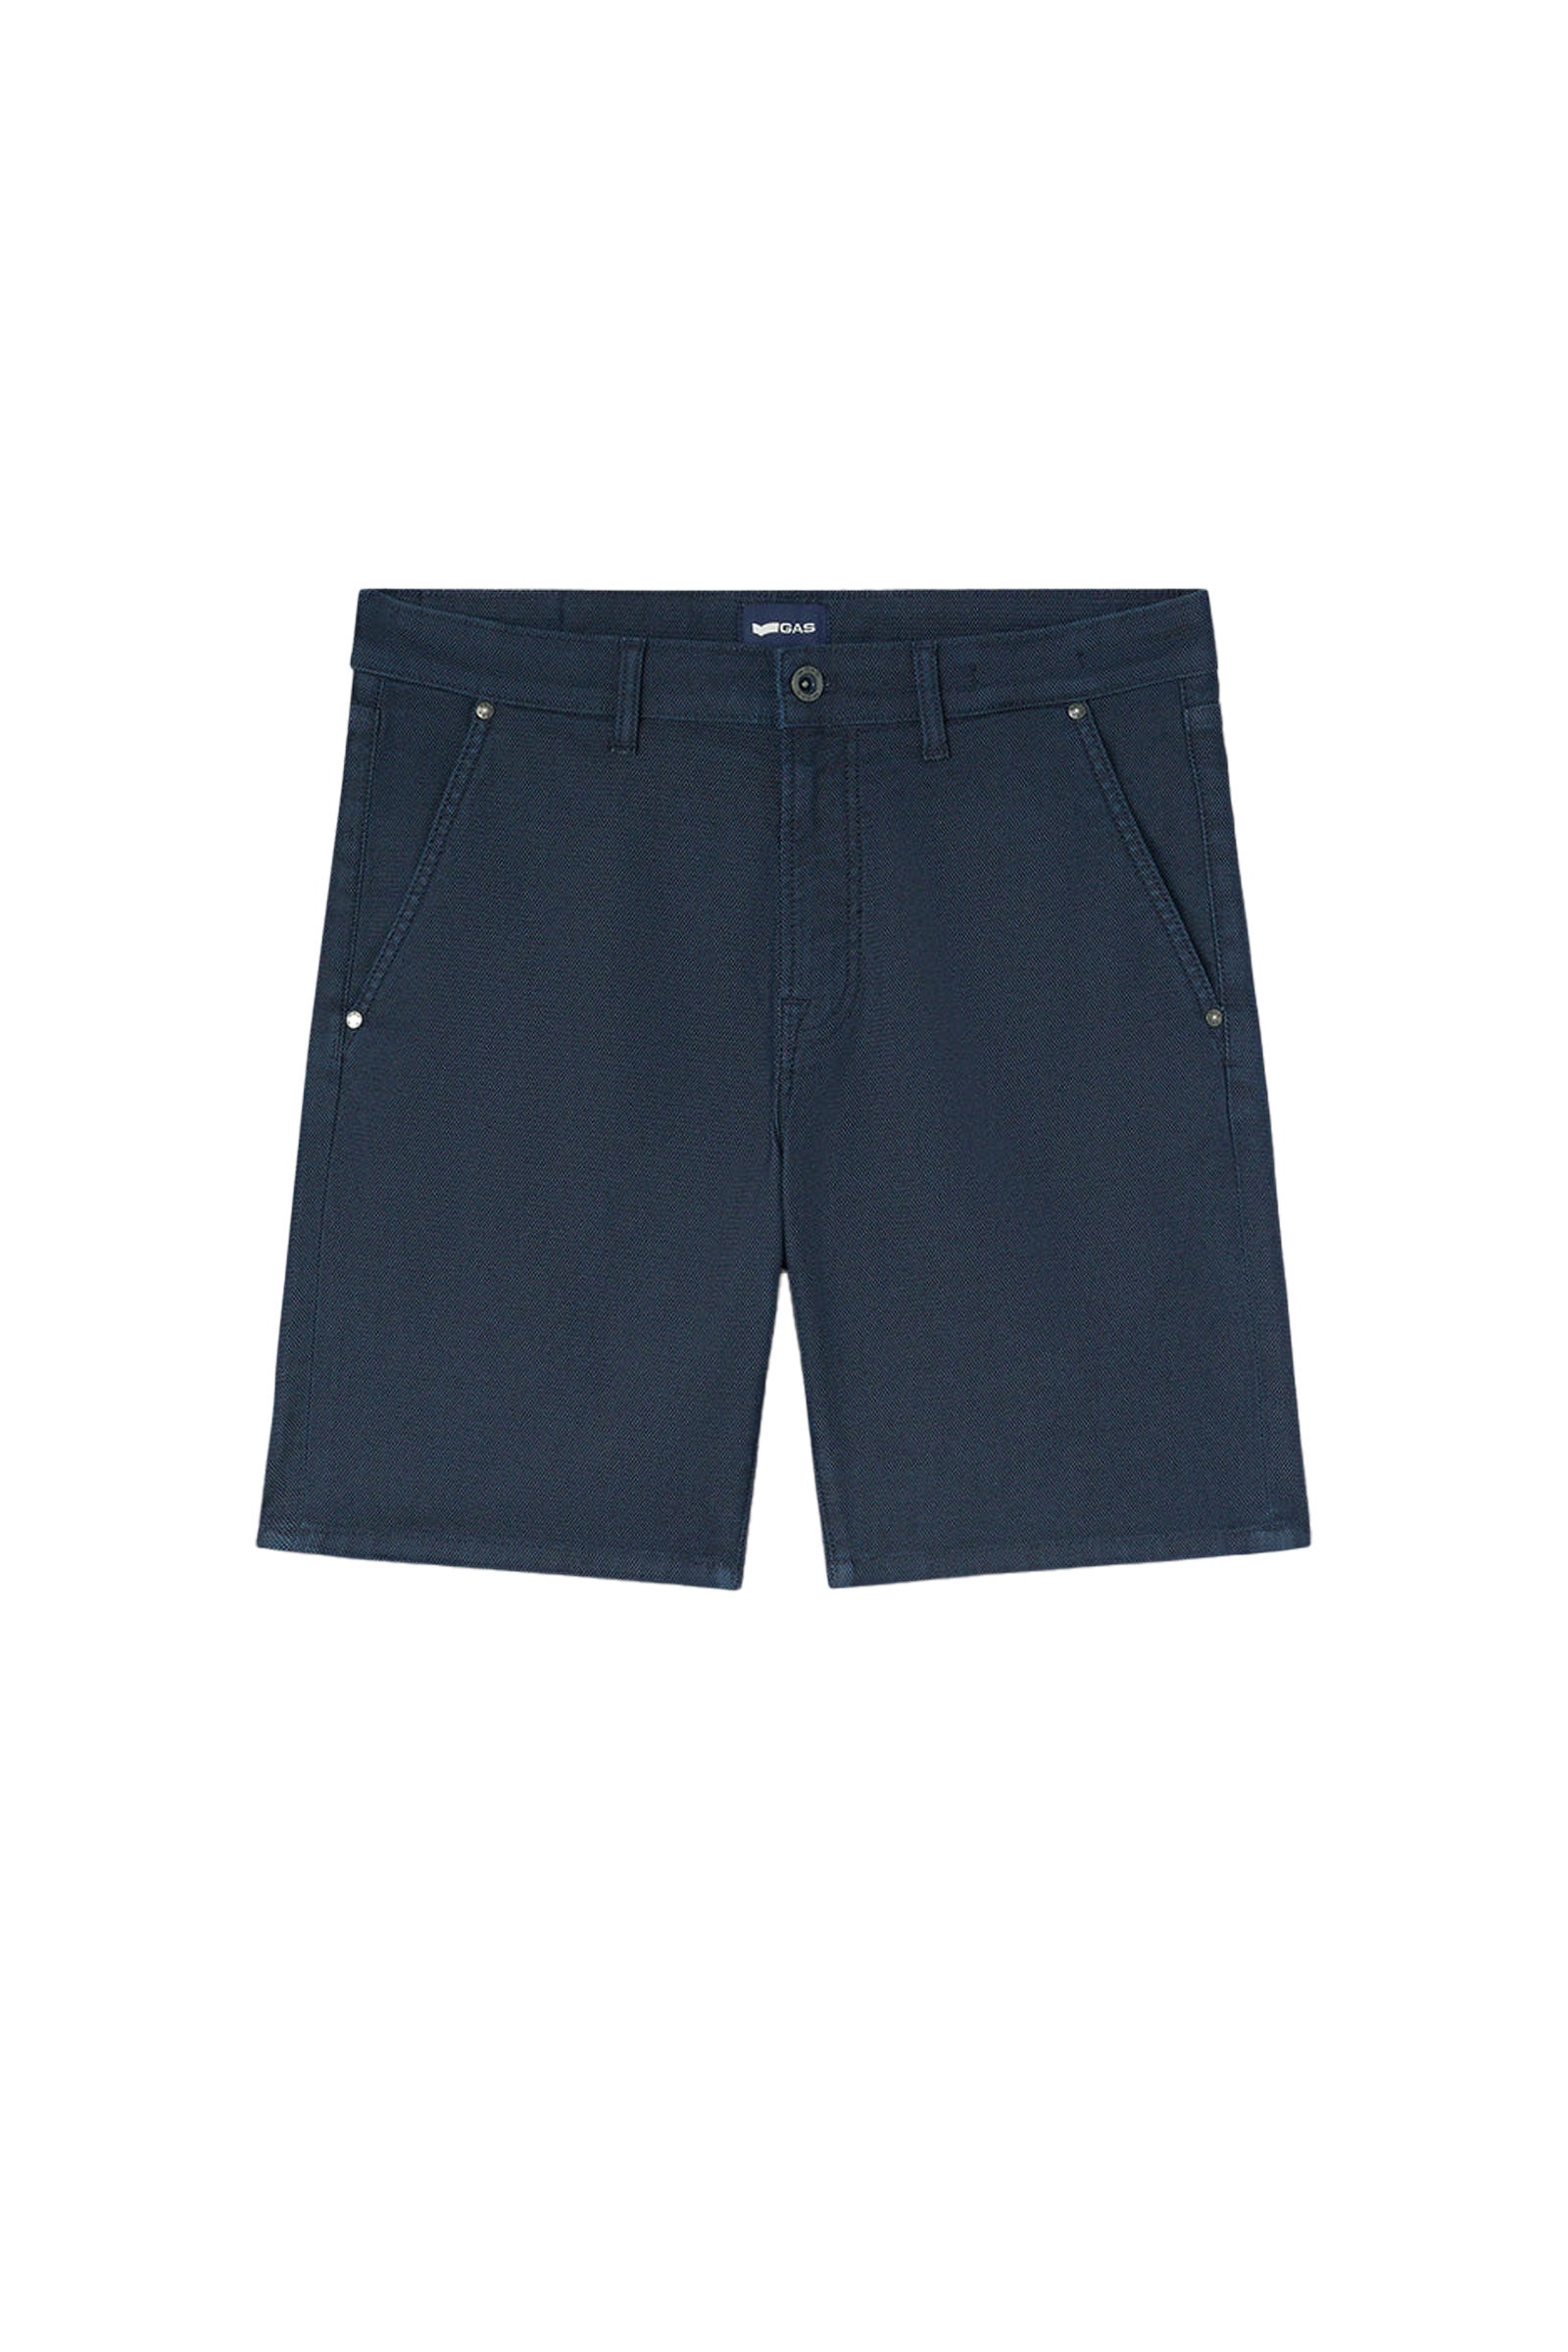 Albert Chino Short Shorts in Medium Blue Light Shorts GAS   